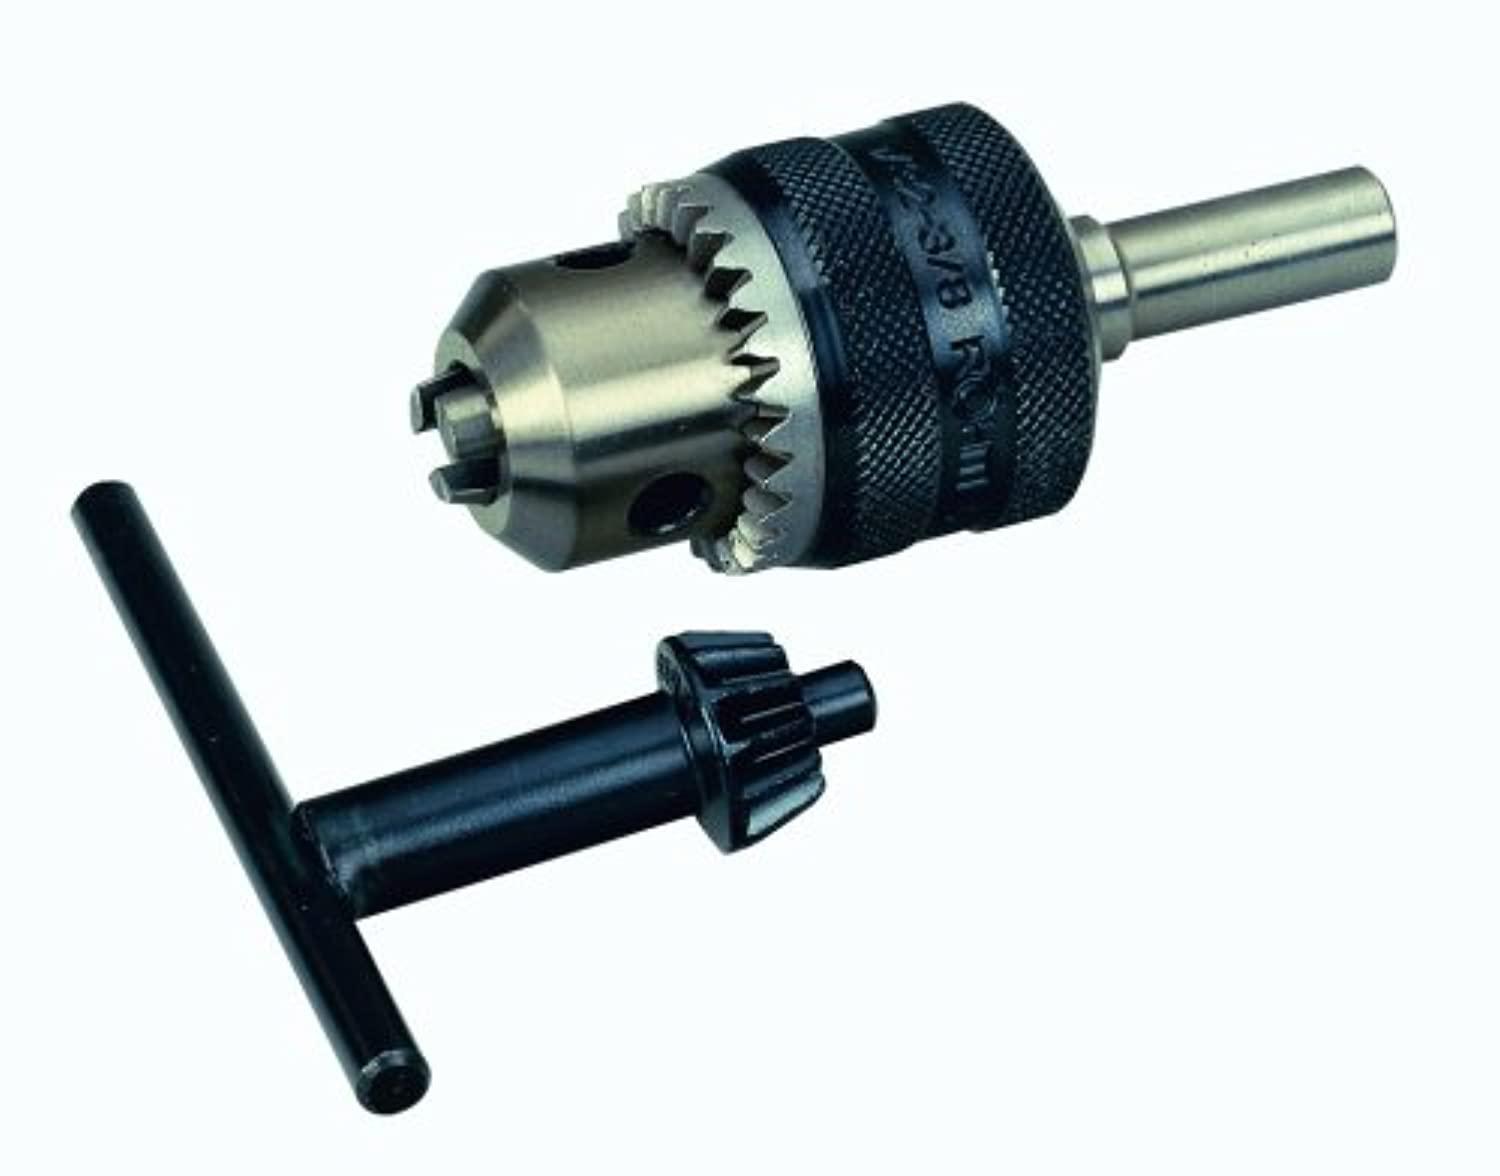 proxxon 24110 drill chuck for pf 230, capacity to 13/32" (10 mm) , silver